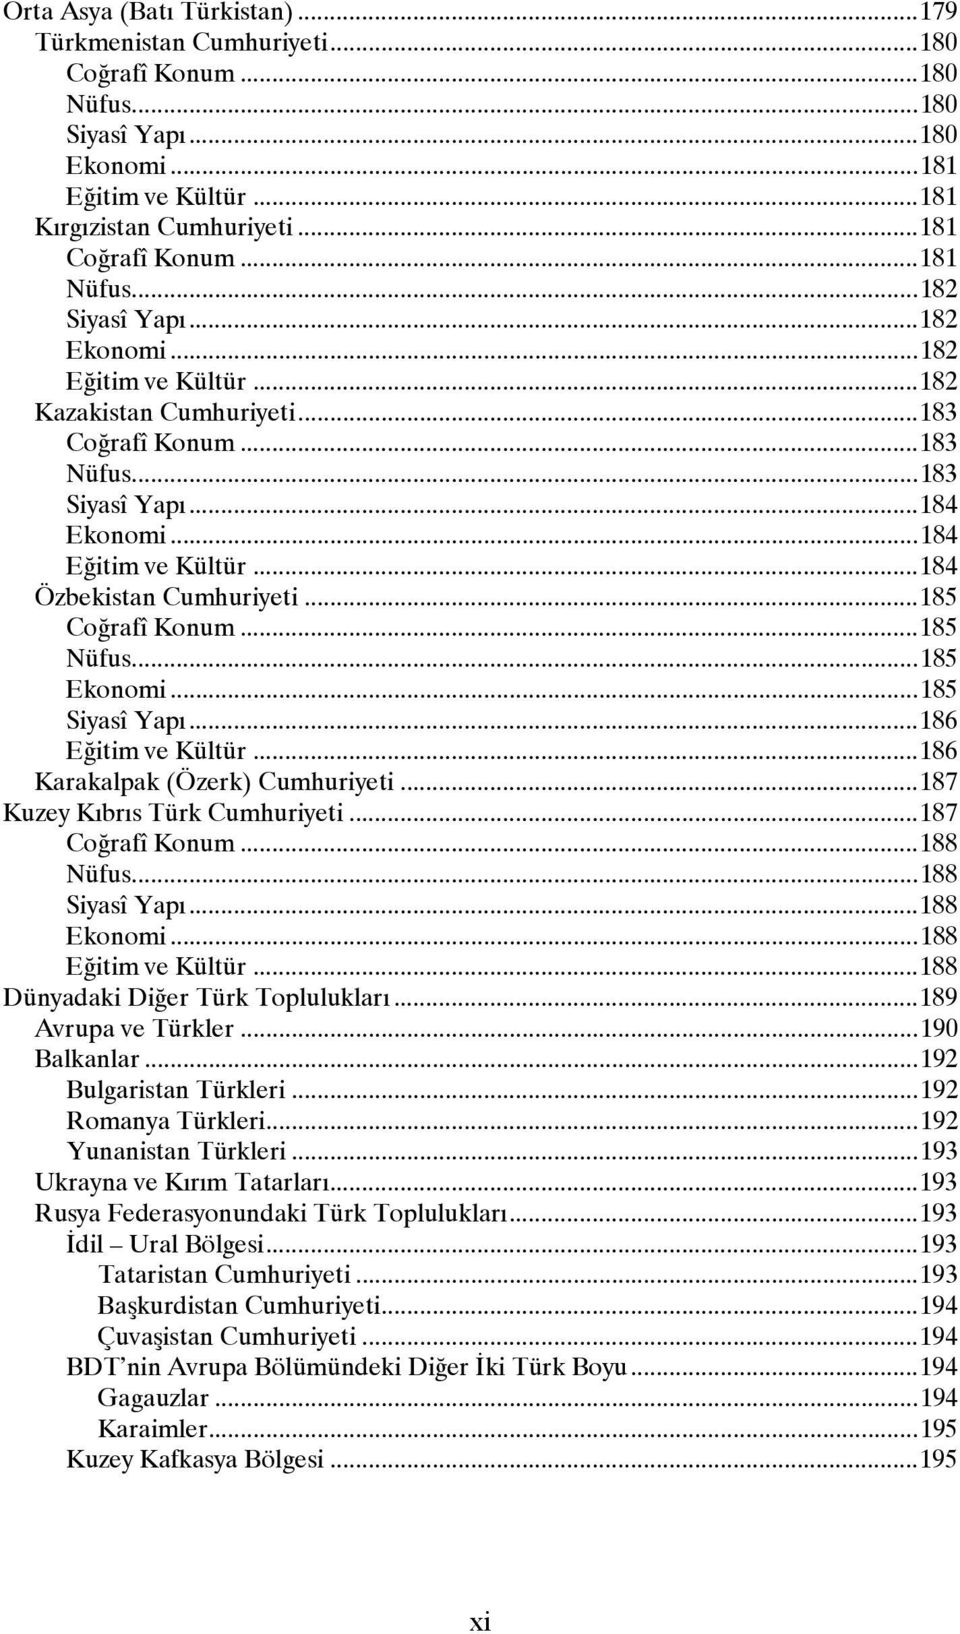 ..184 Özbekistan Cumhuriyeti...185 Coğrafî Konum...185 Nüfus...185 Ekonomi...185 Siyasî Yapı...186 Eğitim ve Kültür...186 Karakalpak (Özerk) Cumhuriyeti...187 Kuzey Kıbrıs Türk Cumhuriyeti.